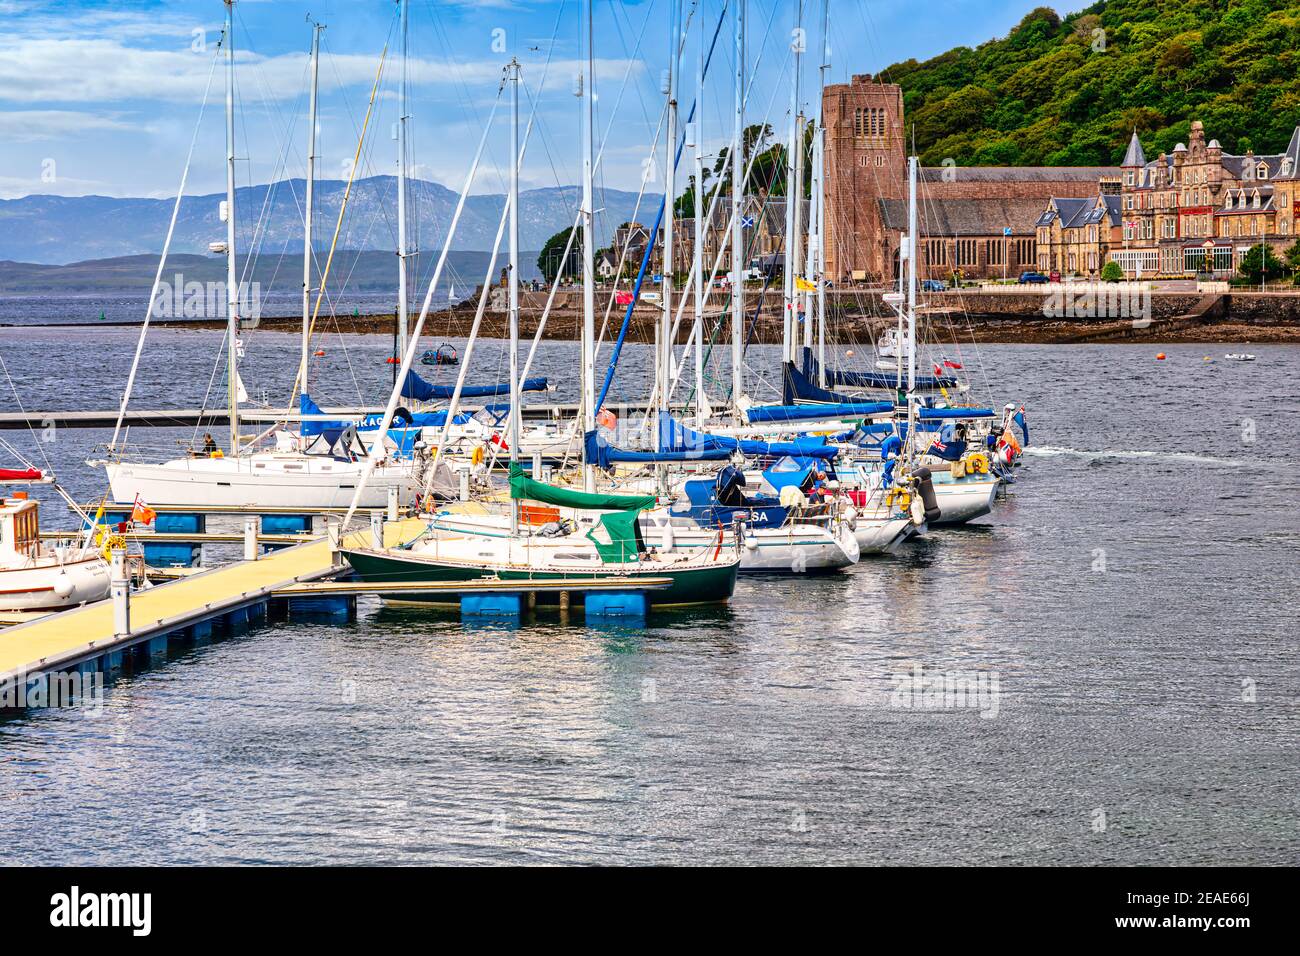 Barche ormeggiate a Oban Bay, porta d'ingresso alle isole e la capitale del pesce della Scozia, Oban, Argyll e Bute, Scozia Foto Stock